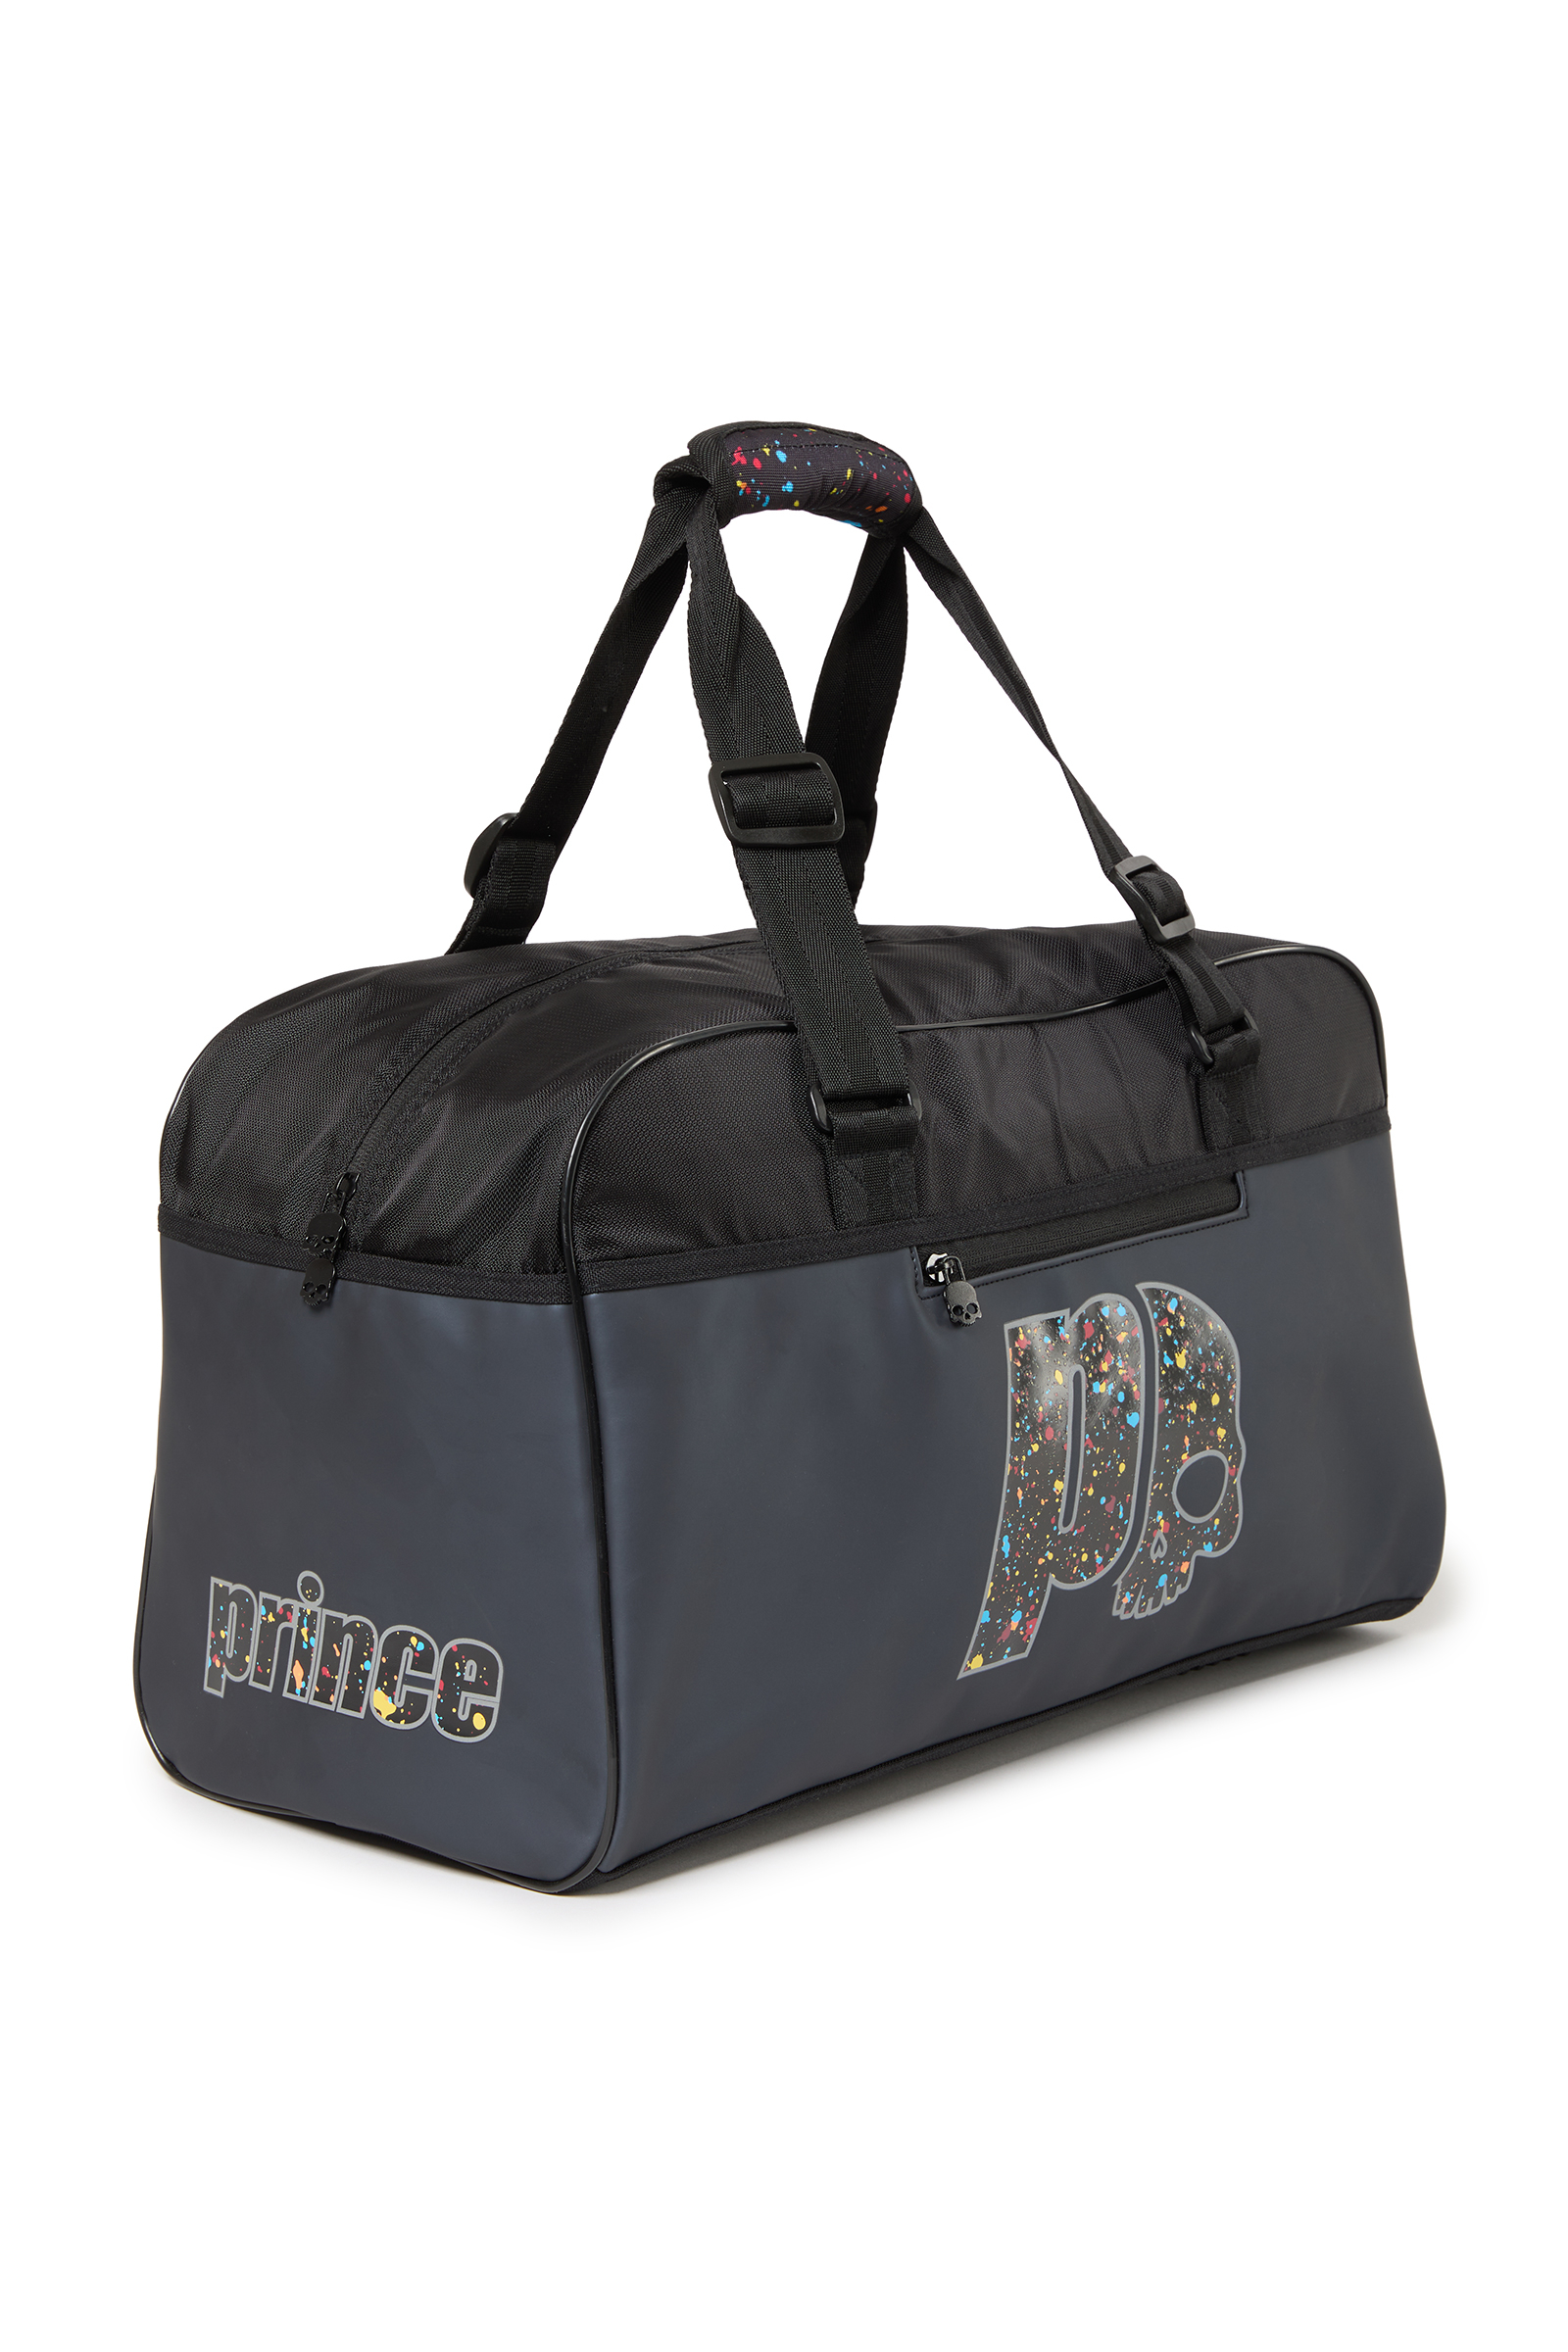 SPARK SMALL DUFFLE BAG PRINCE BY HYDROGEN - Accessori - Abbigliamento sportivo | Hydrogen